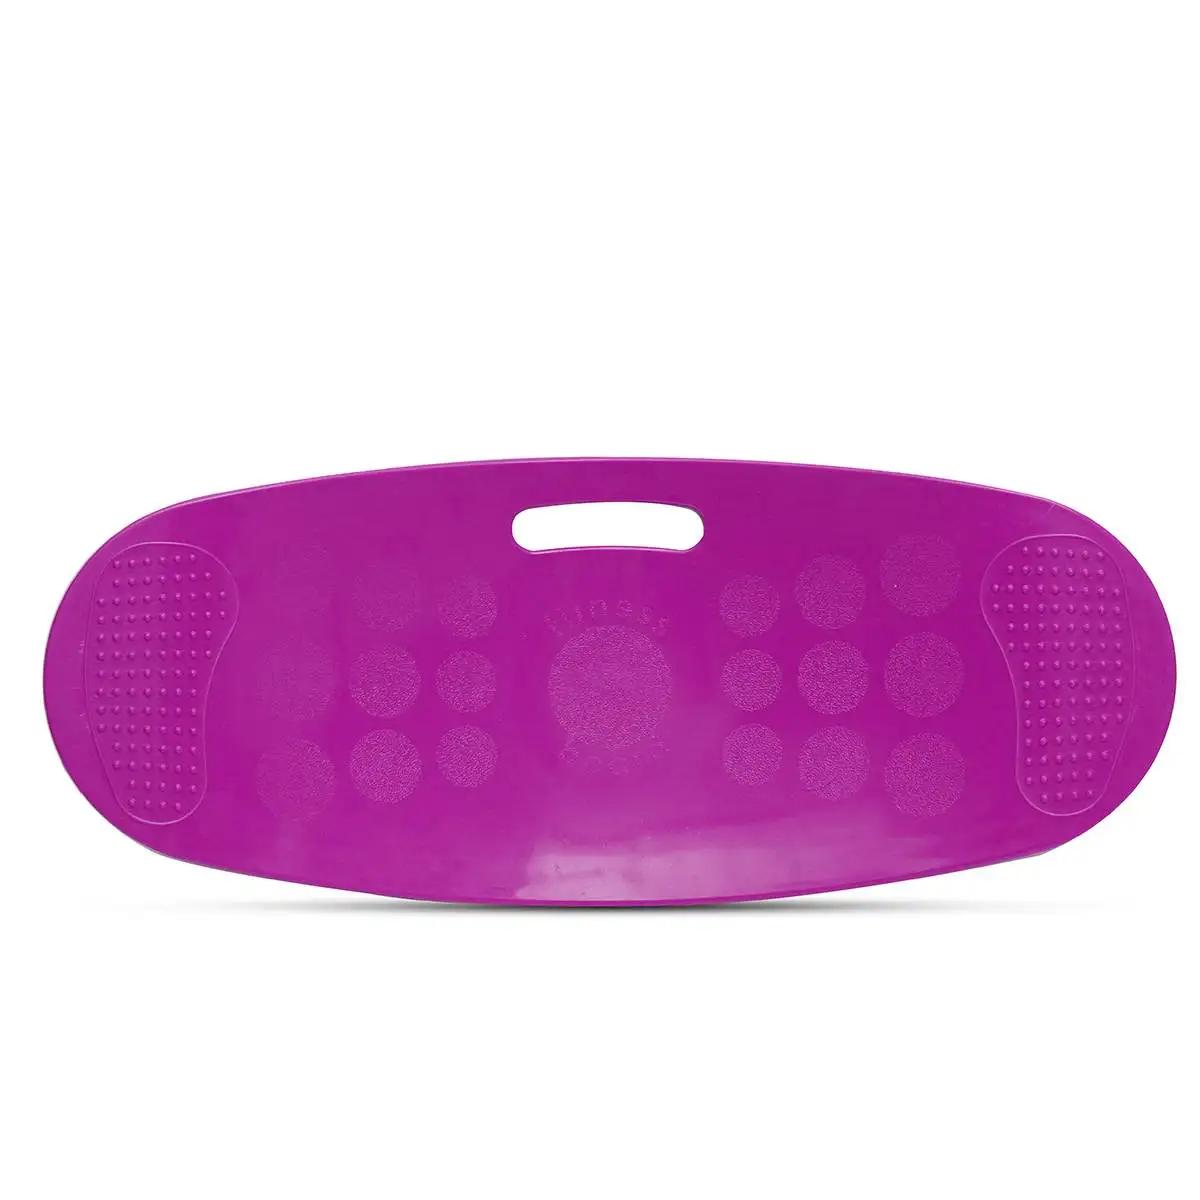 ABS скручивающая балансирная доска для фитнеса тренировка брюшных мышц ног накладки для балансировки Prancha фитнес простая основная одежда для йоги Twister - Цвет: Фиолетовый